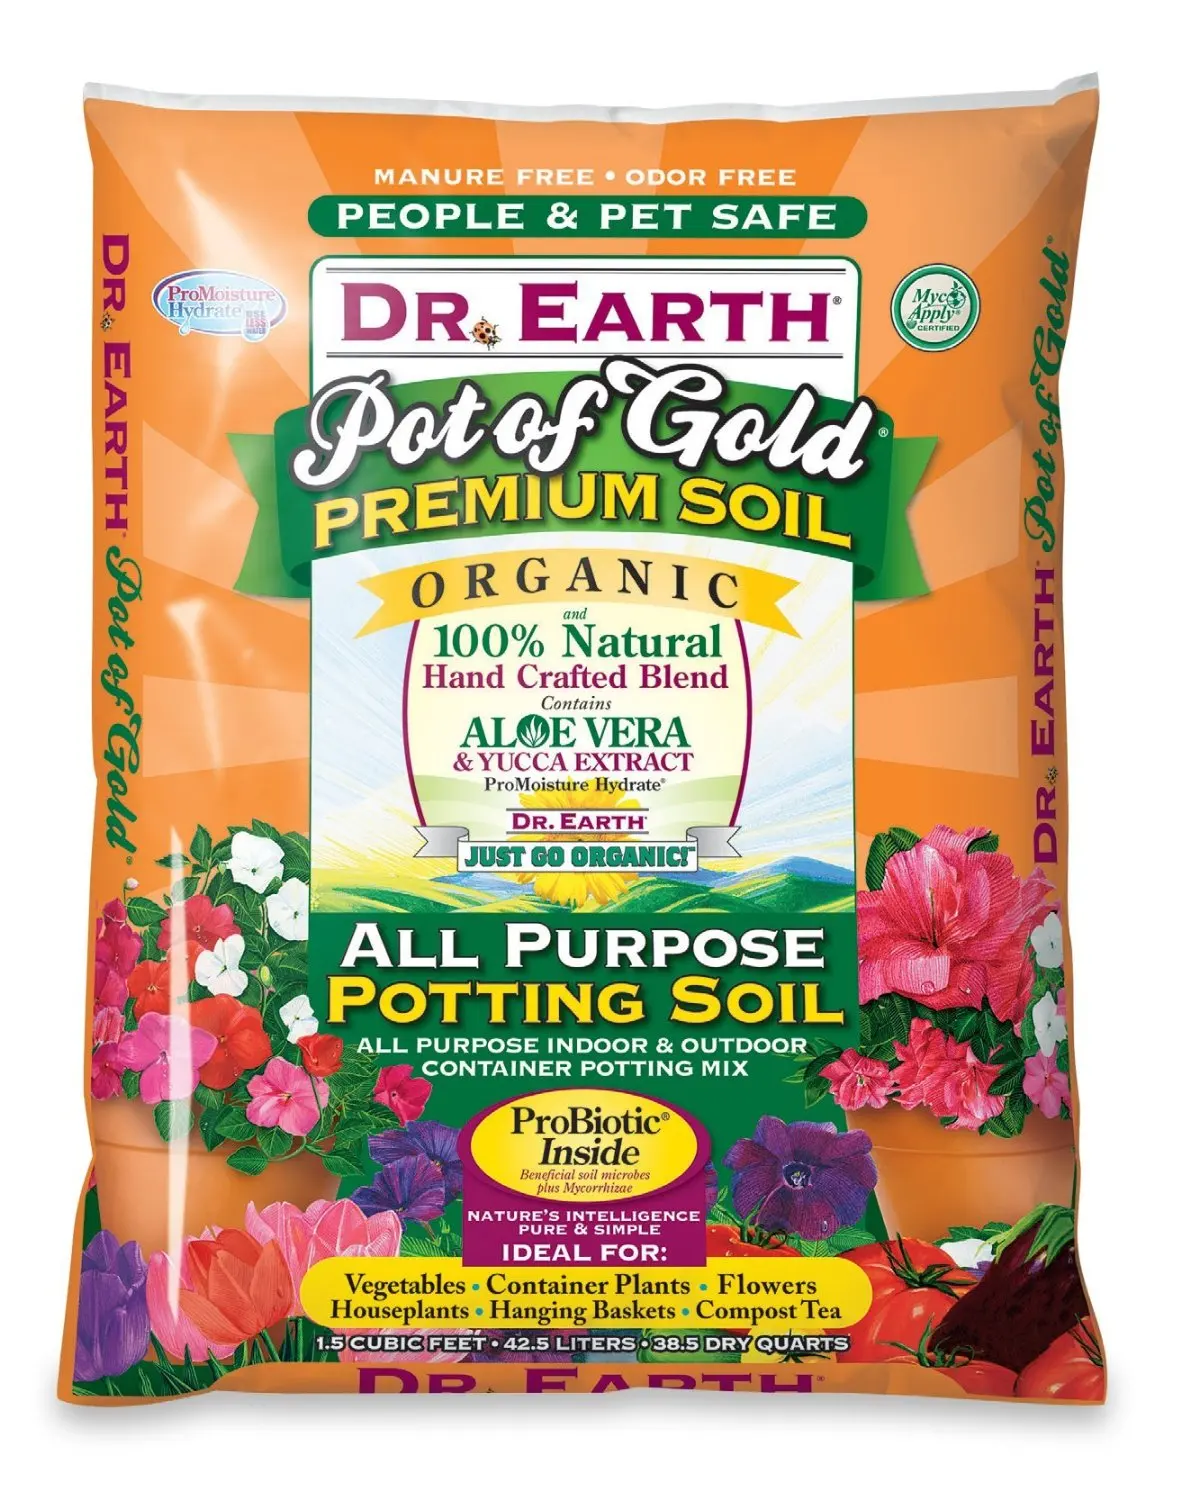 green label expert brand potting soil